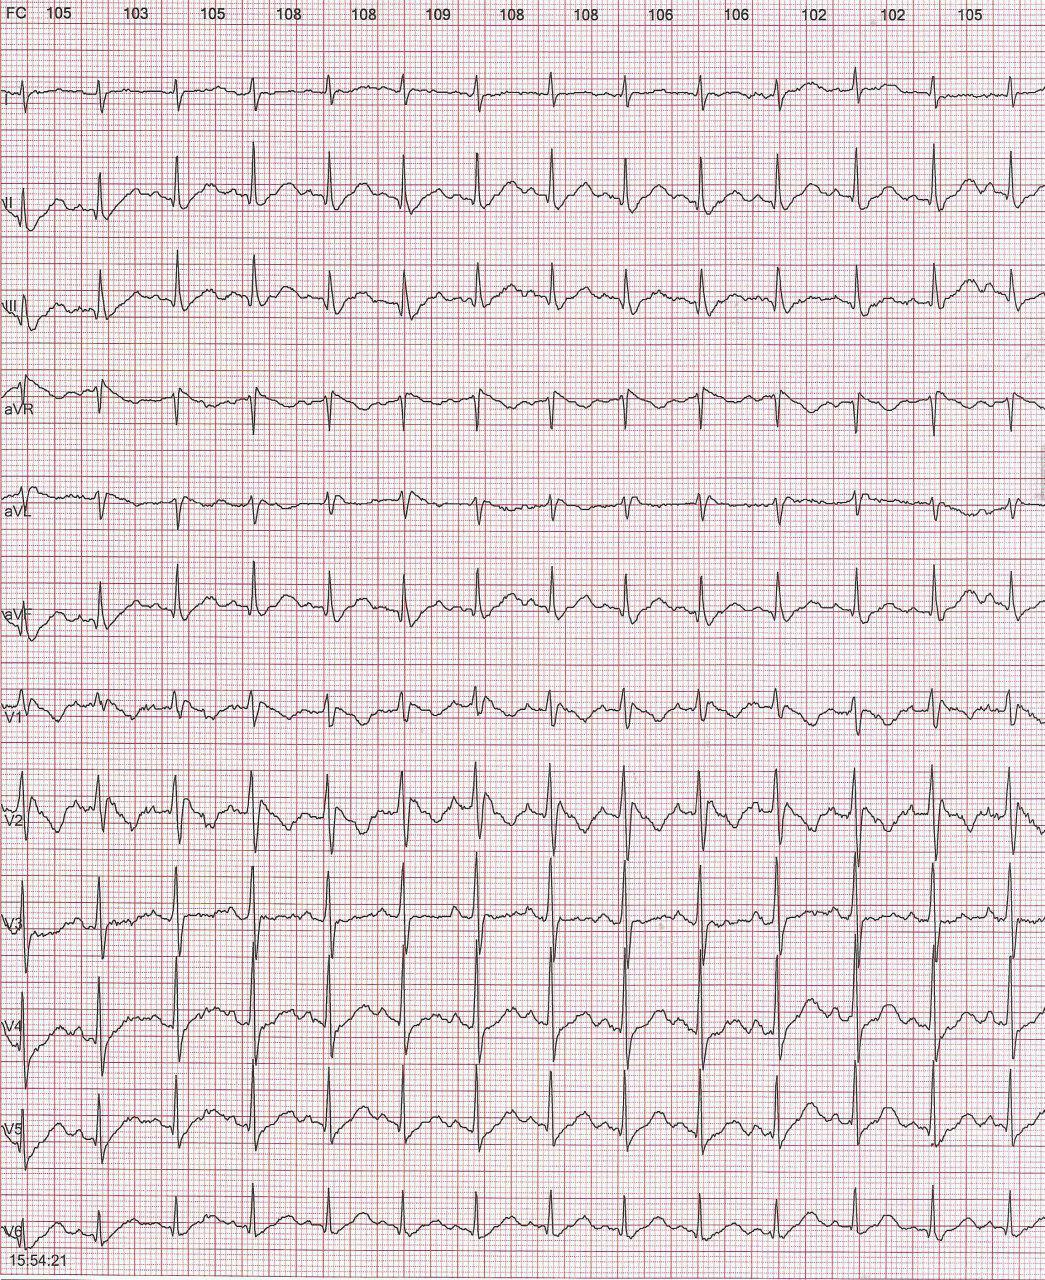 Mujer de 47 años sin cardiopatía estructural con palpitaciones nocturnas en la que se detecta patrón de Brugada tipo I durante ECG de Holter